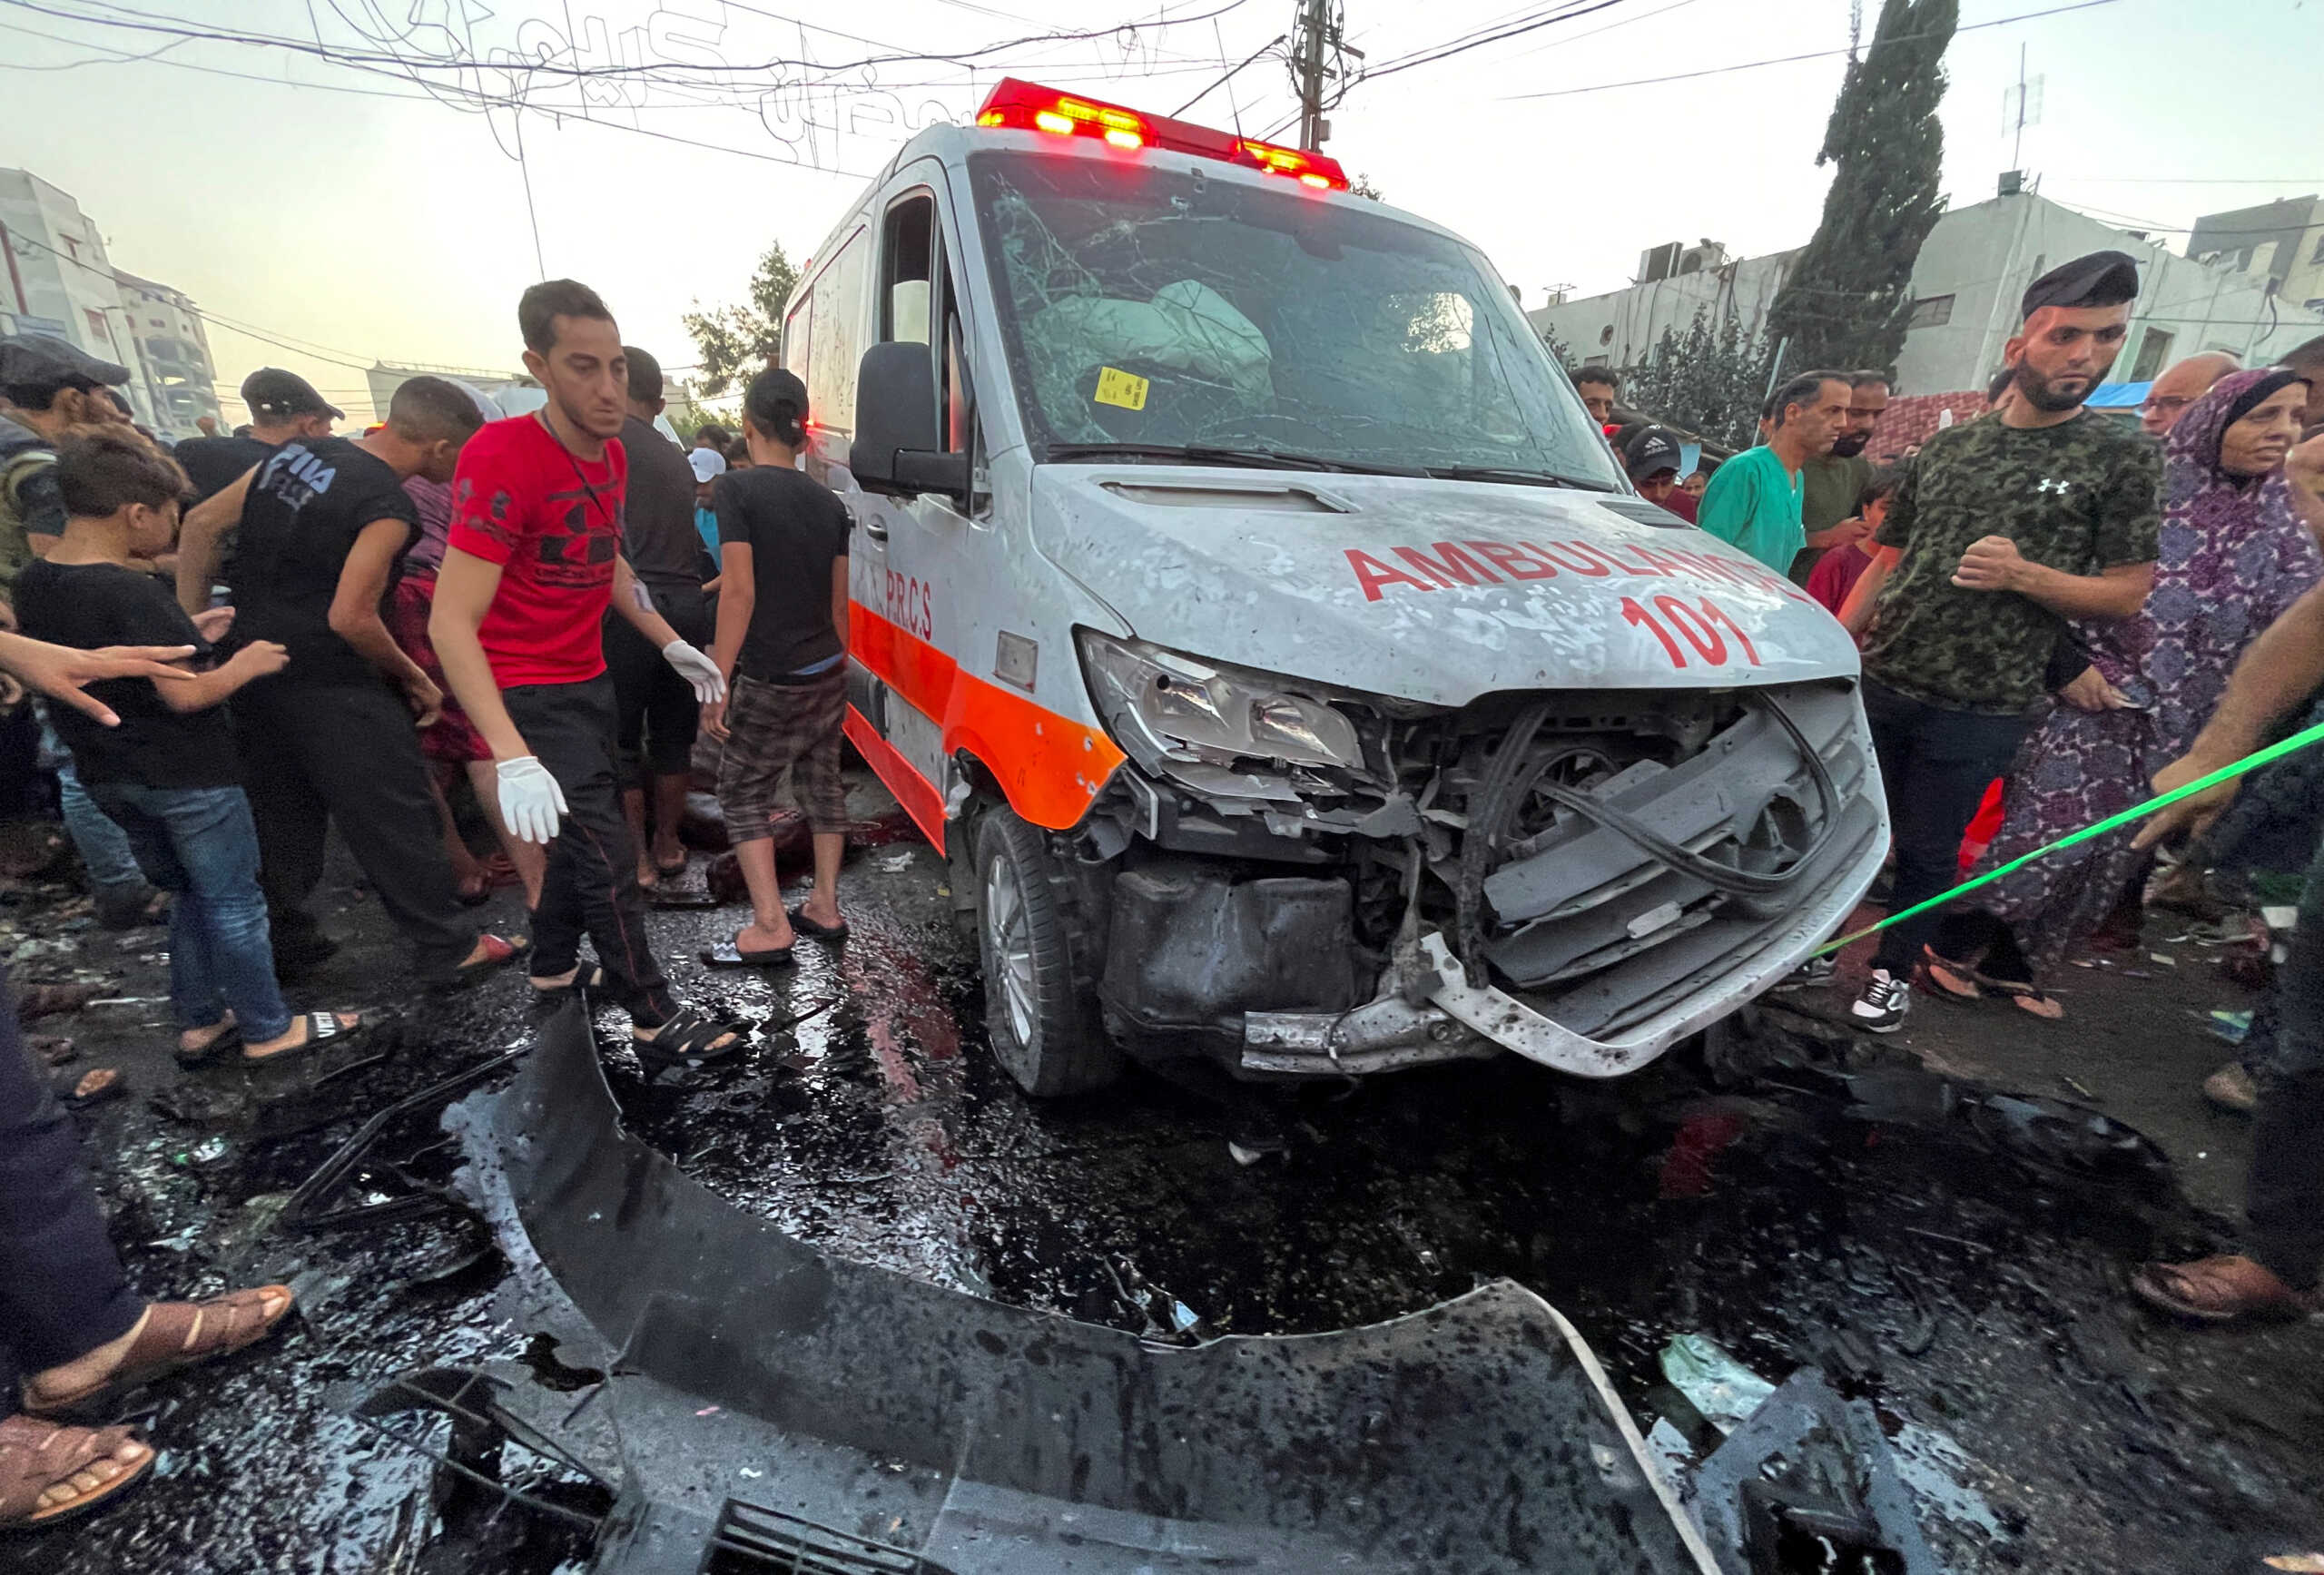 Πόλεμος στο Ισραήλ: 13 νεκροί και 26 τραυματίες από την επίθεση στο ασθενοφόρο στη Γάζα σύμφωνα με τη Χαμάς